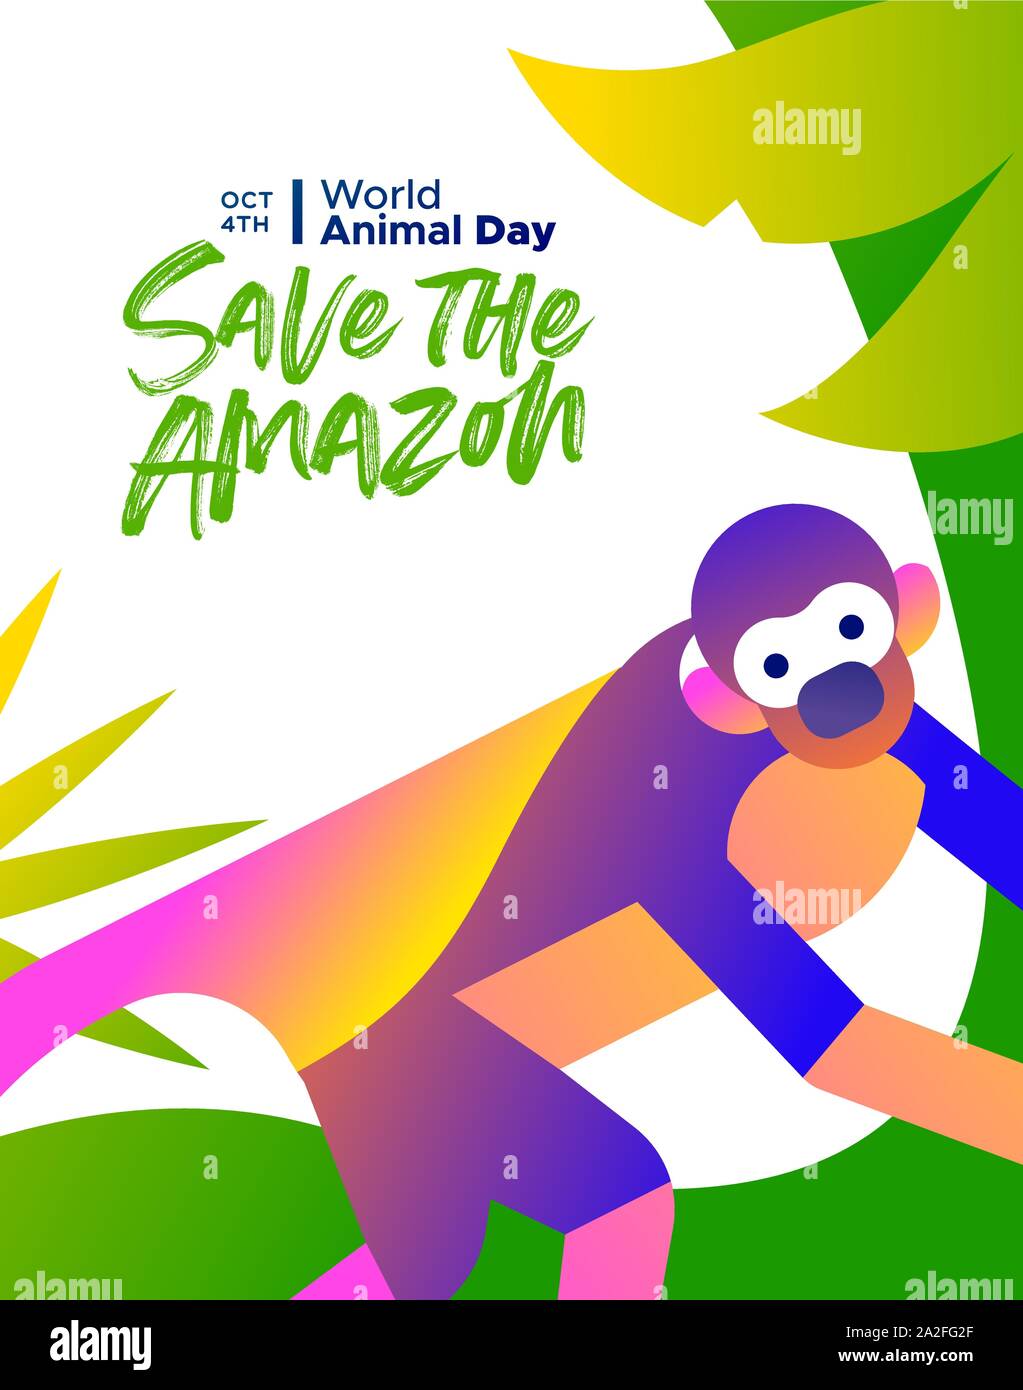 Speichern Sie die Amazon Illustration für Welt Tier Tag, gefährdete Arten Erhaltung Konzept. Brasilianischen Regenwald Totenkopfäffchen in modernen und farbenfrohen Fl Stock Vektor